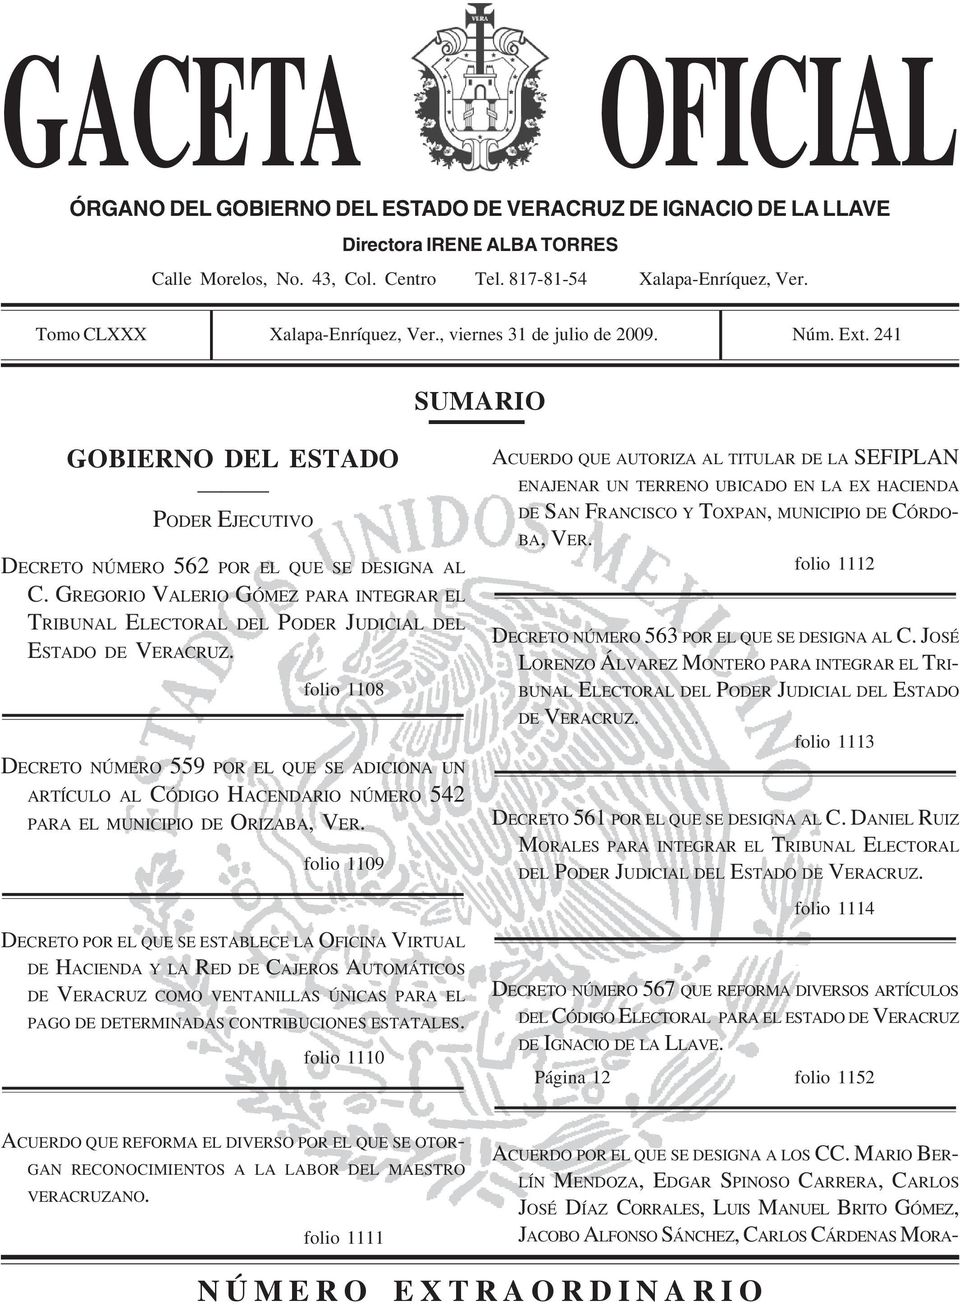 GREGORIO VALERIO GÓMEZ PARA INTEGRAR EL TRIBUNAL ELECTORAL DEL PODER JUDICIAL DEL ESTADO DE VERACRUZ.